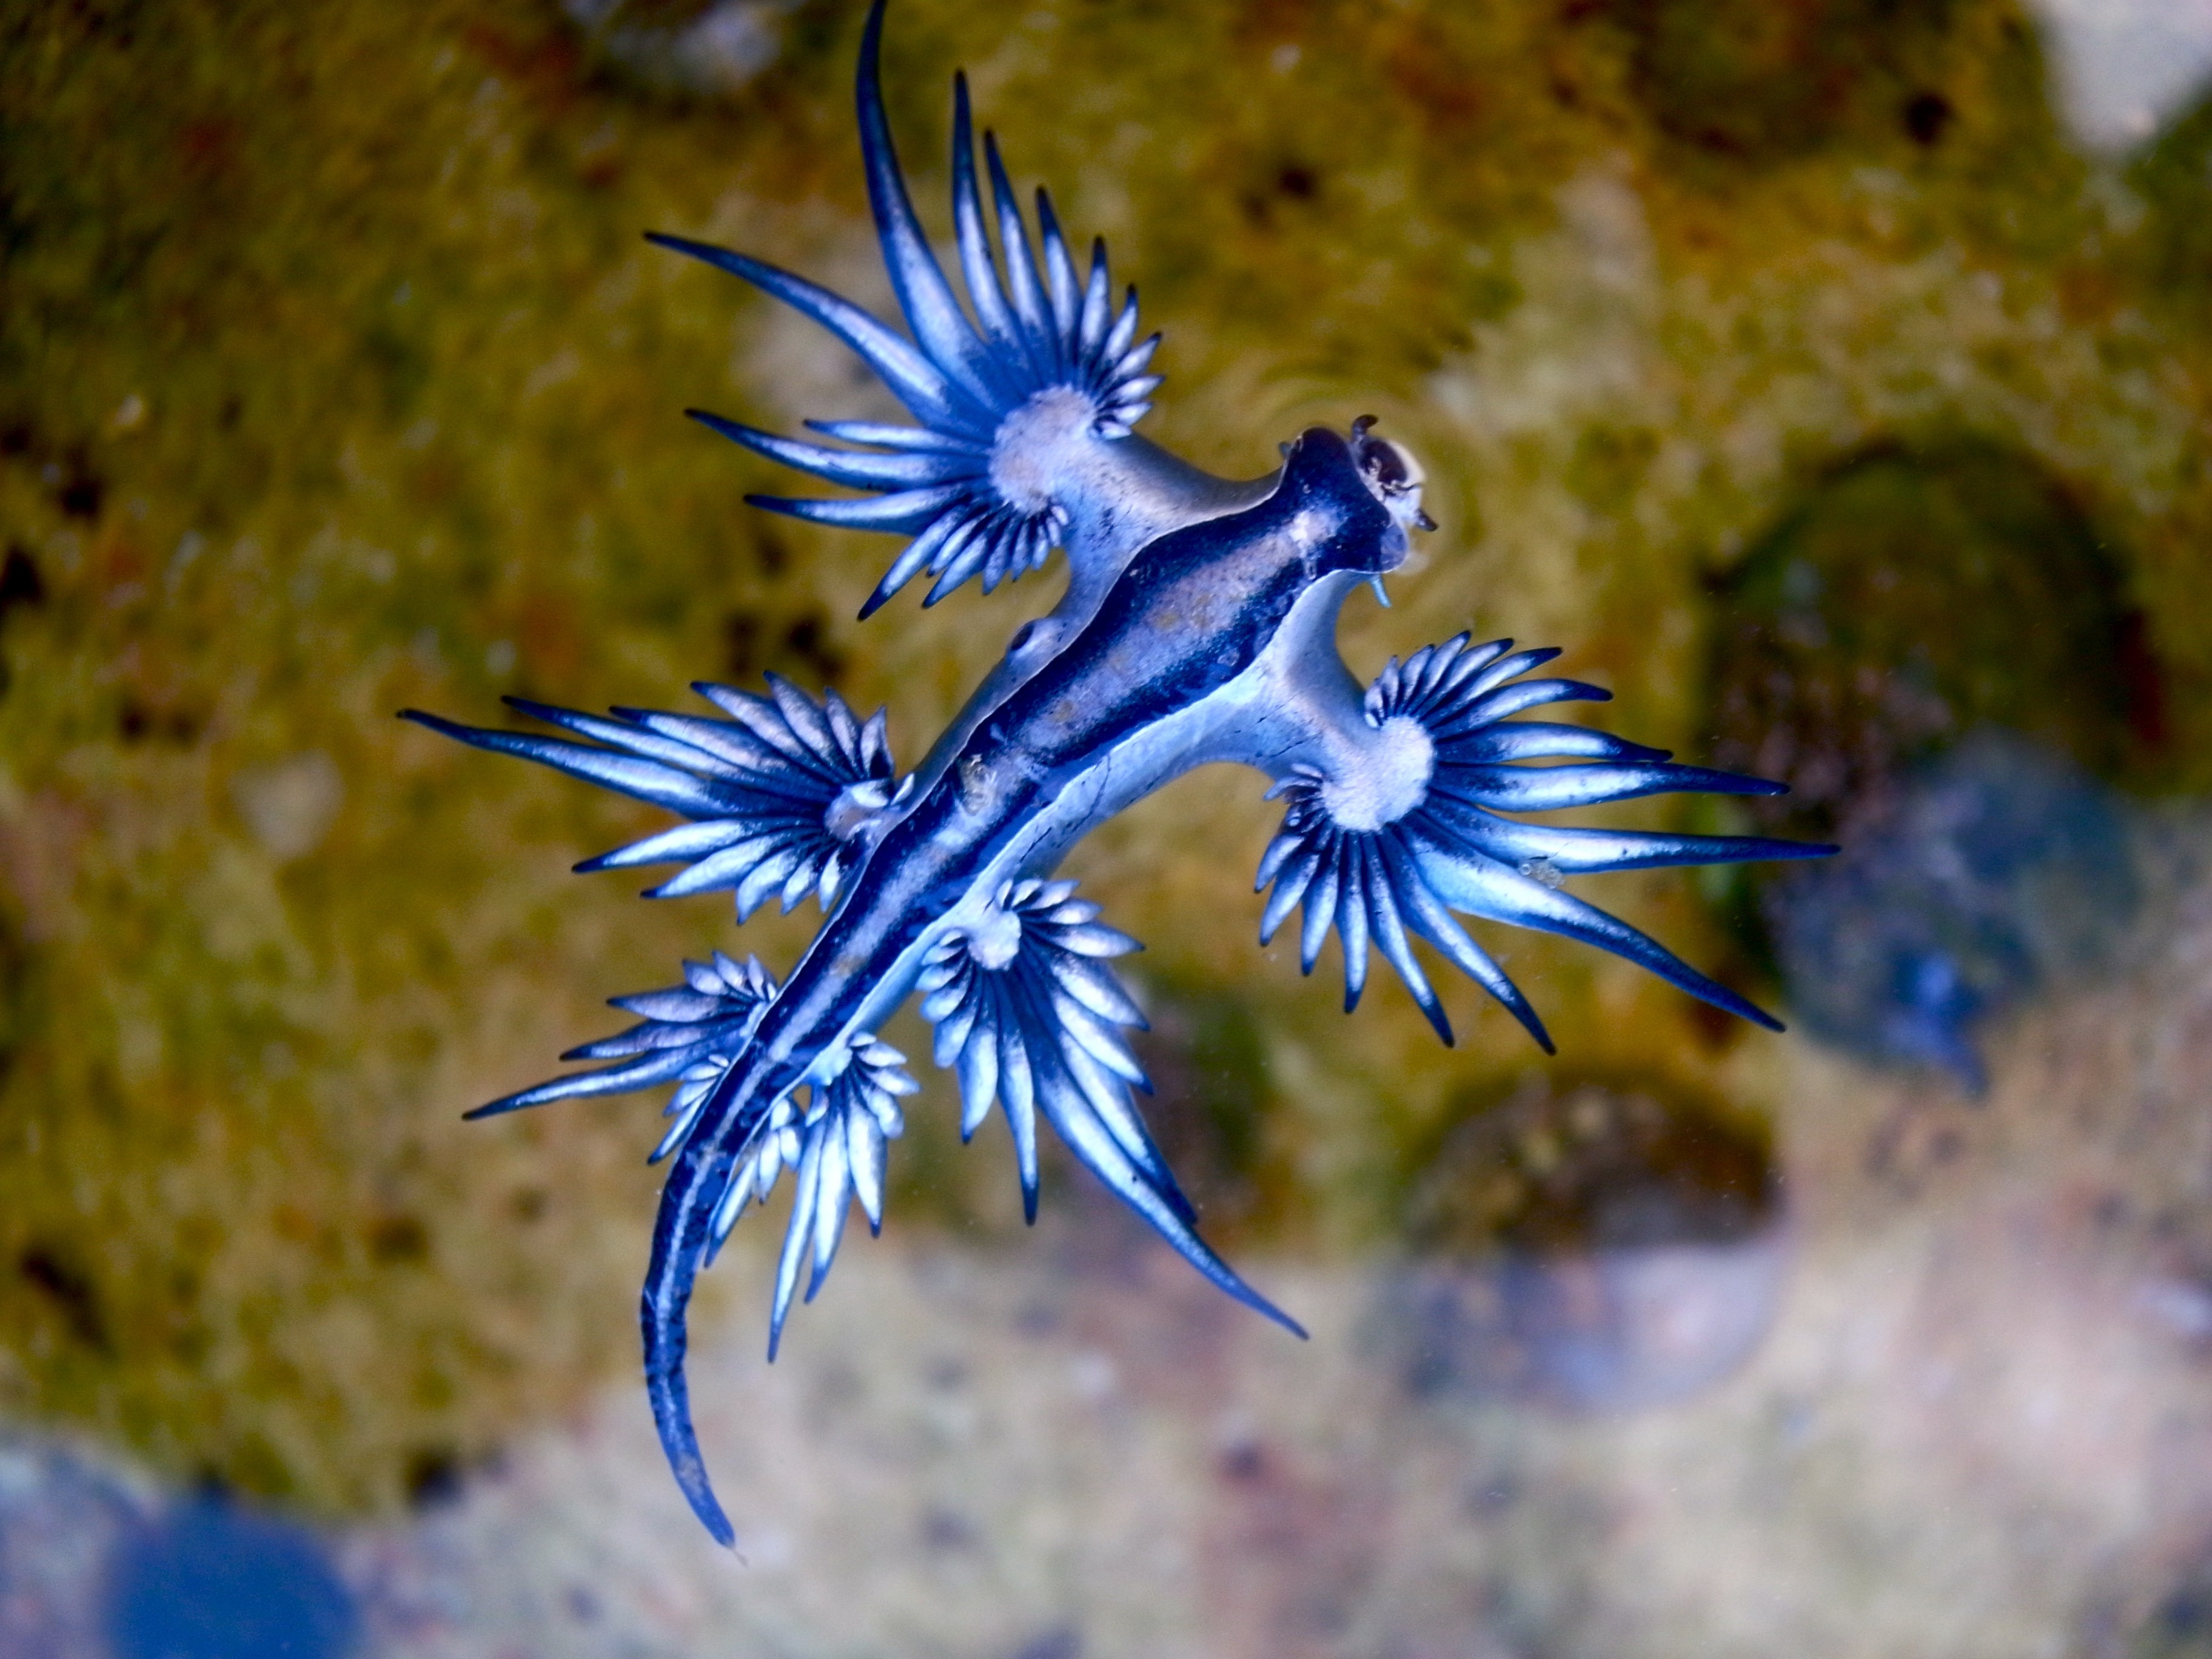 O molusco dragão azul (Glaucus atlanticus) é raro, belo e perigoso (Foto: Wikimedia Commons)